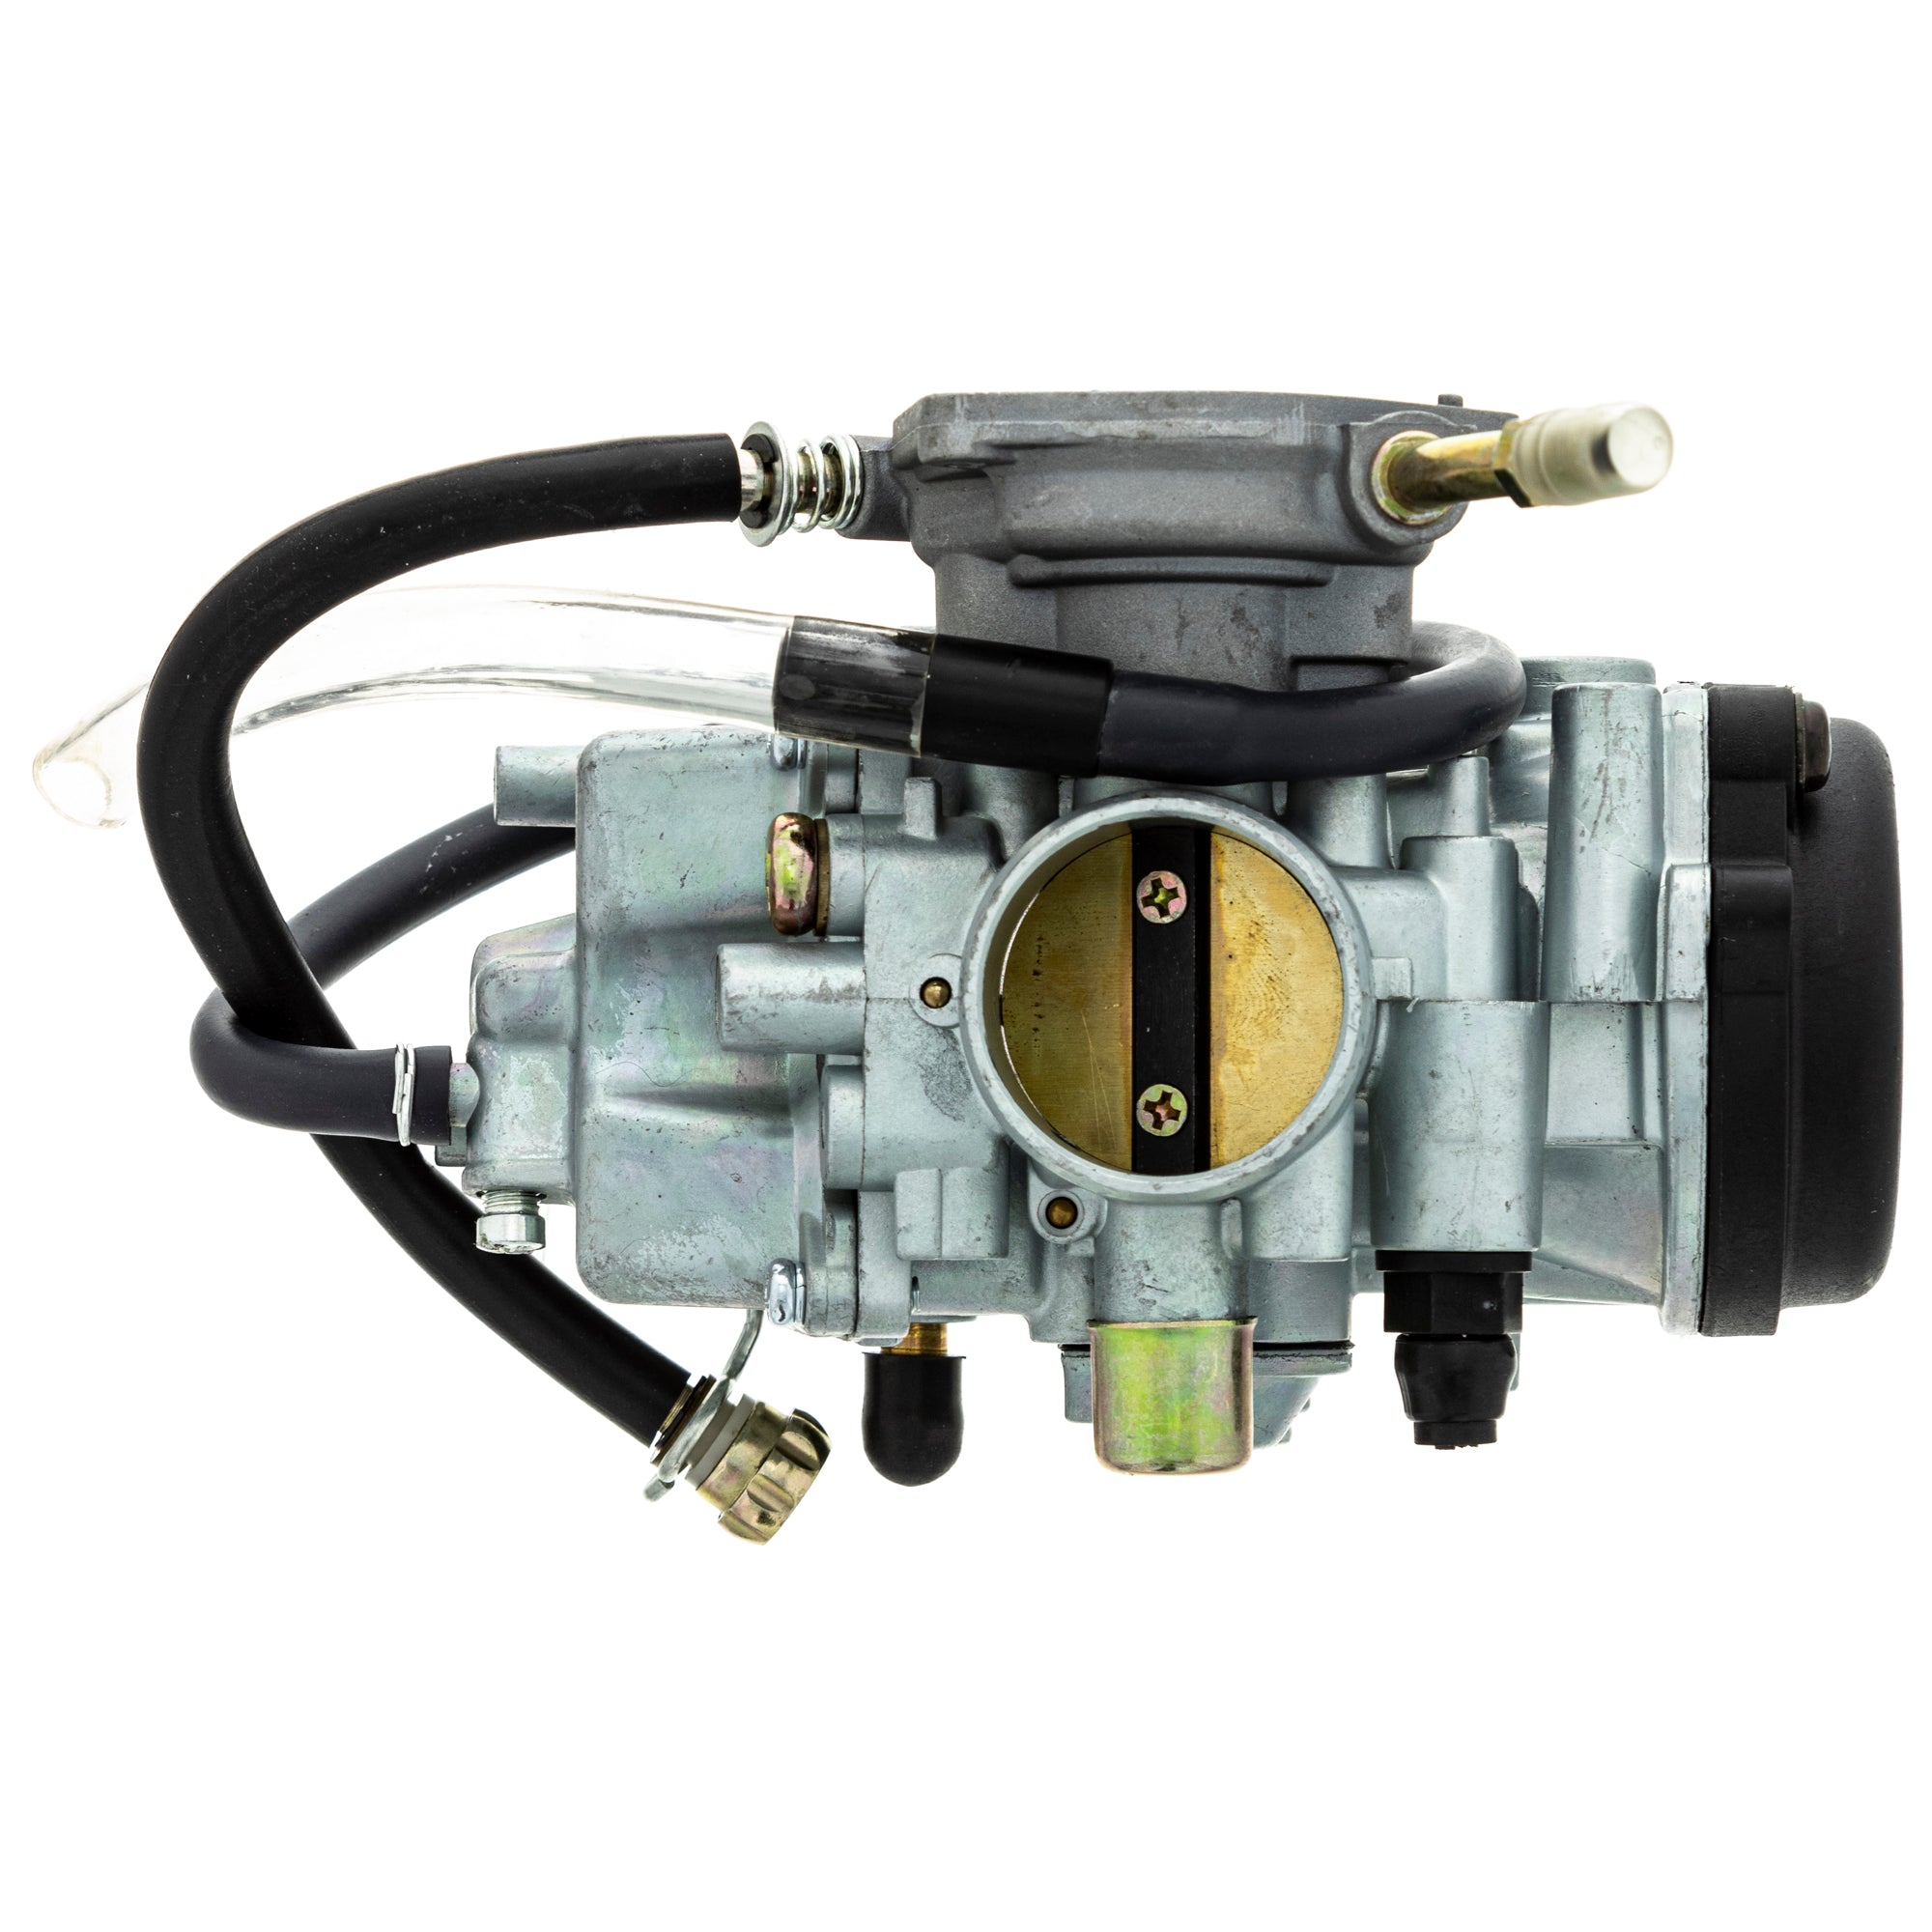 Carburetor Assembly For Yamaha 5UH-E4101-11-00 5UH-E4101-10-00 5UH-E4101-01-00 5UH-E4101-00-00